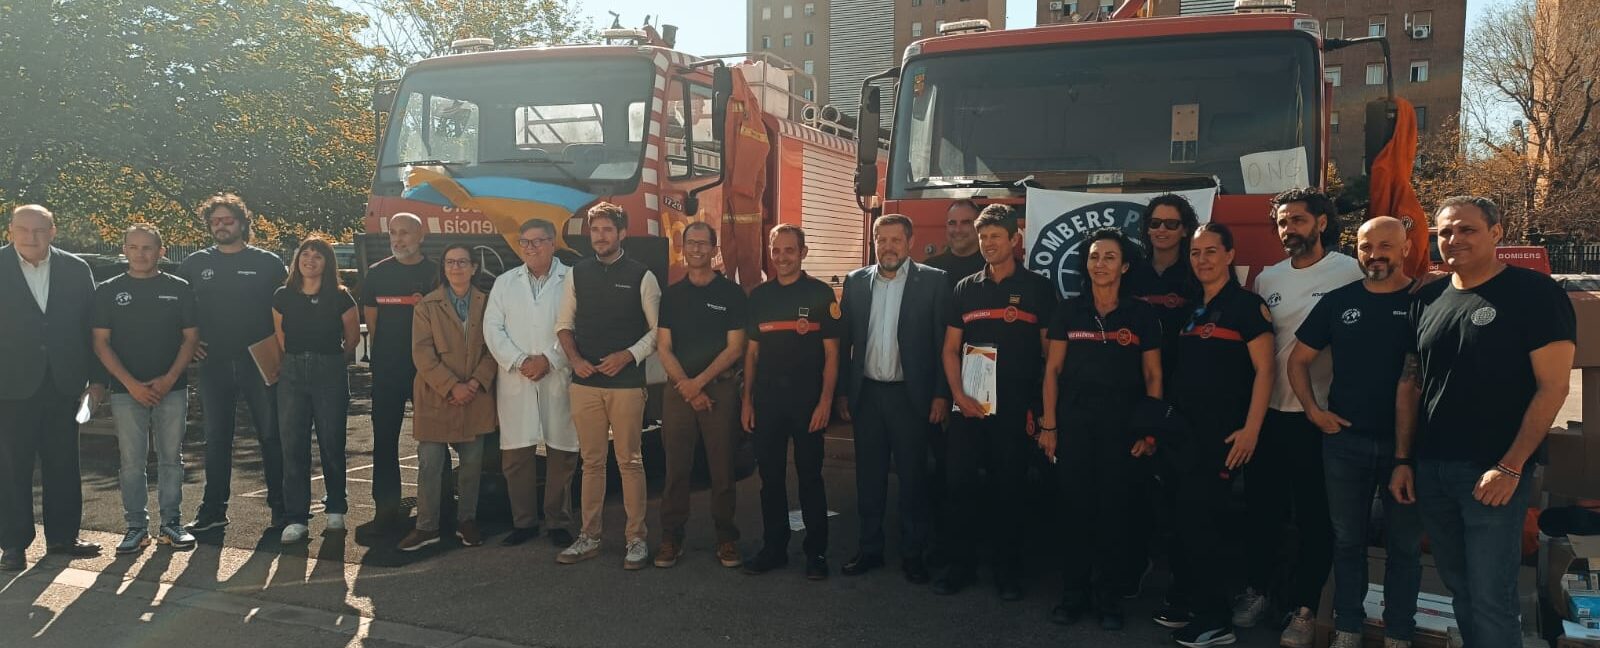 Федерація асоціацій українців в Іспанії і громада Валенсії передали Україні два пожежні автомобілі